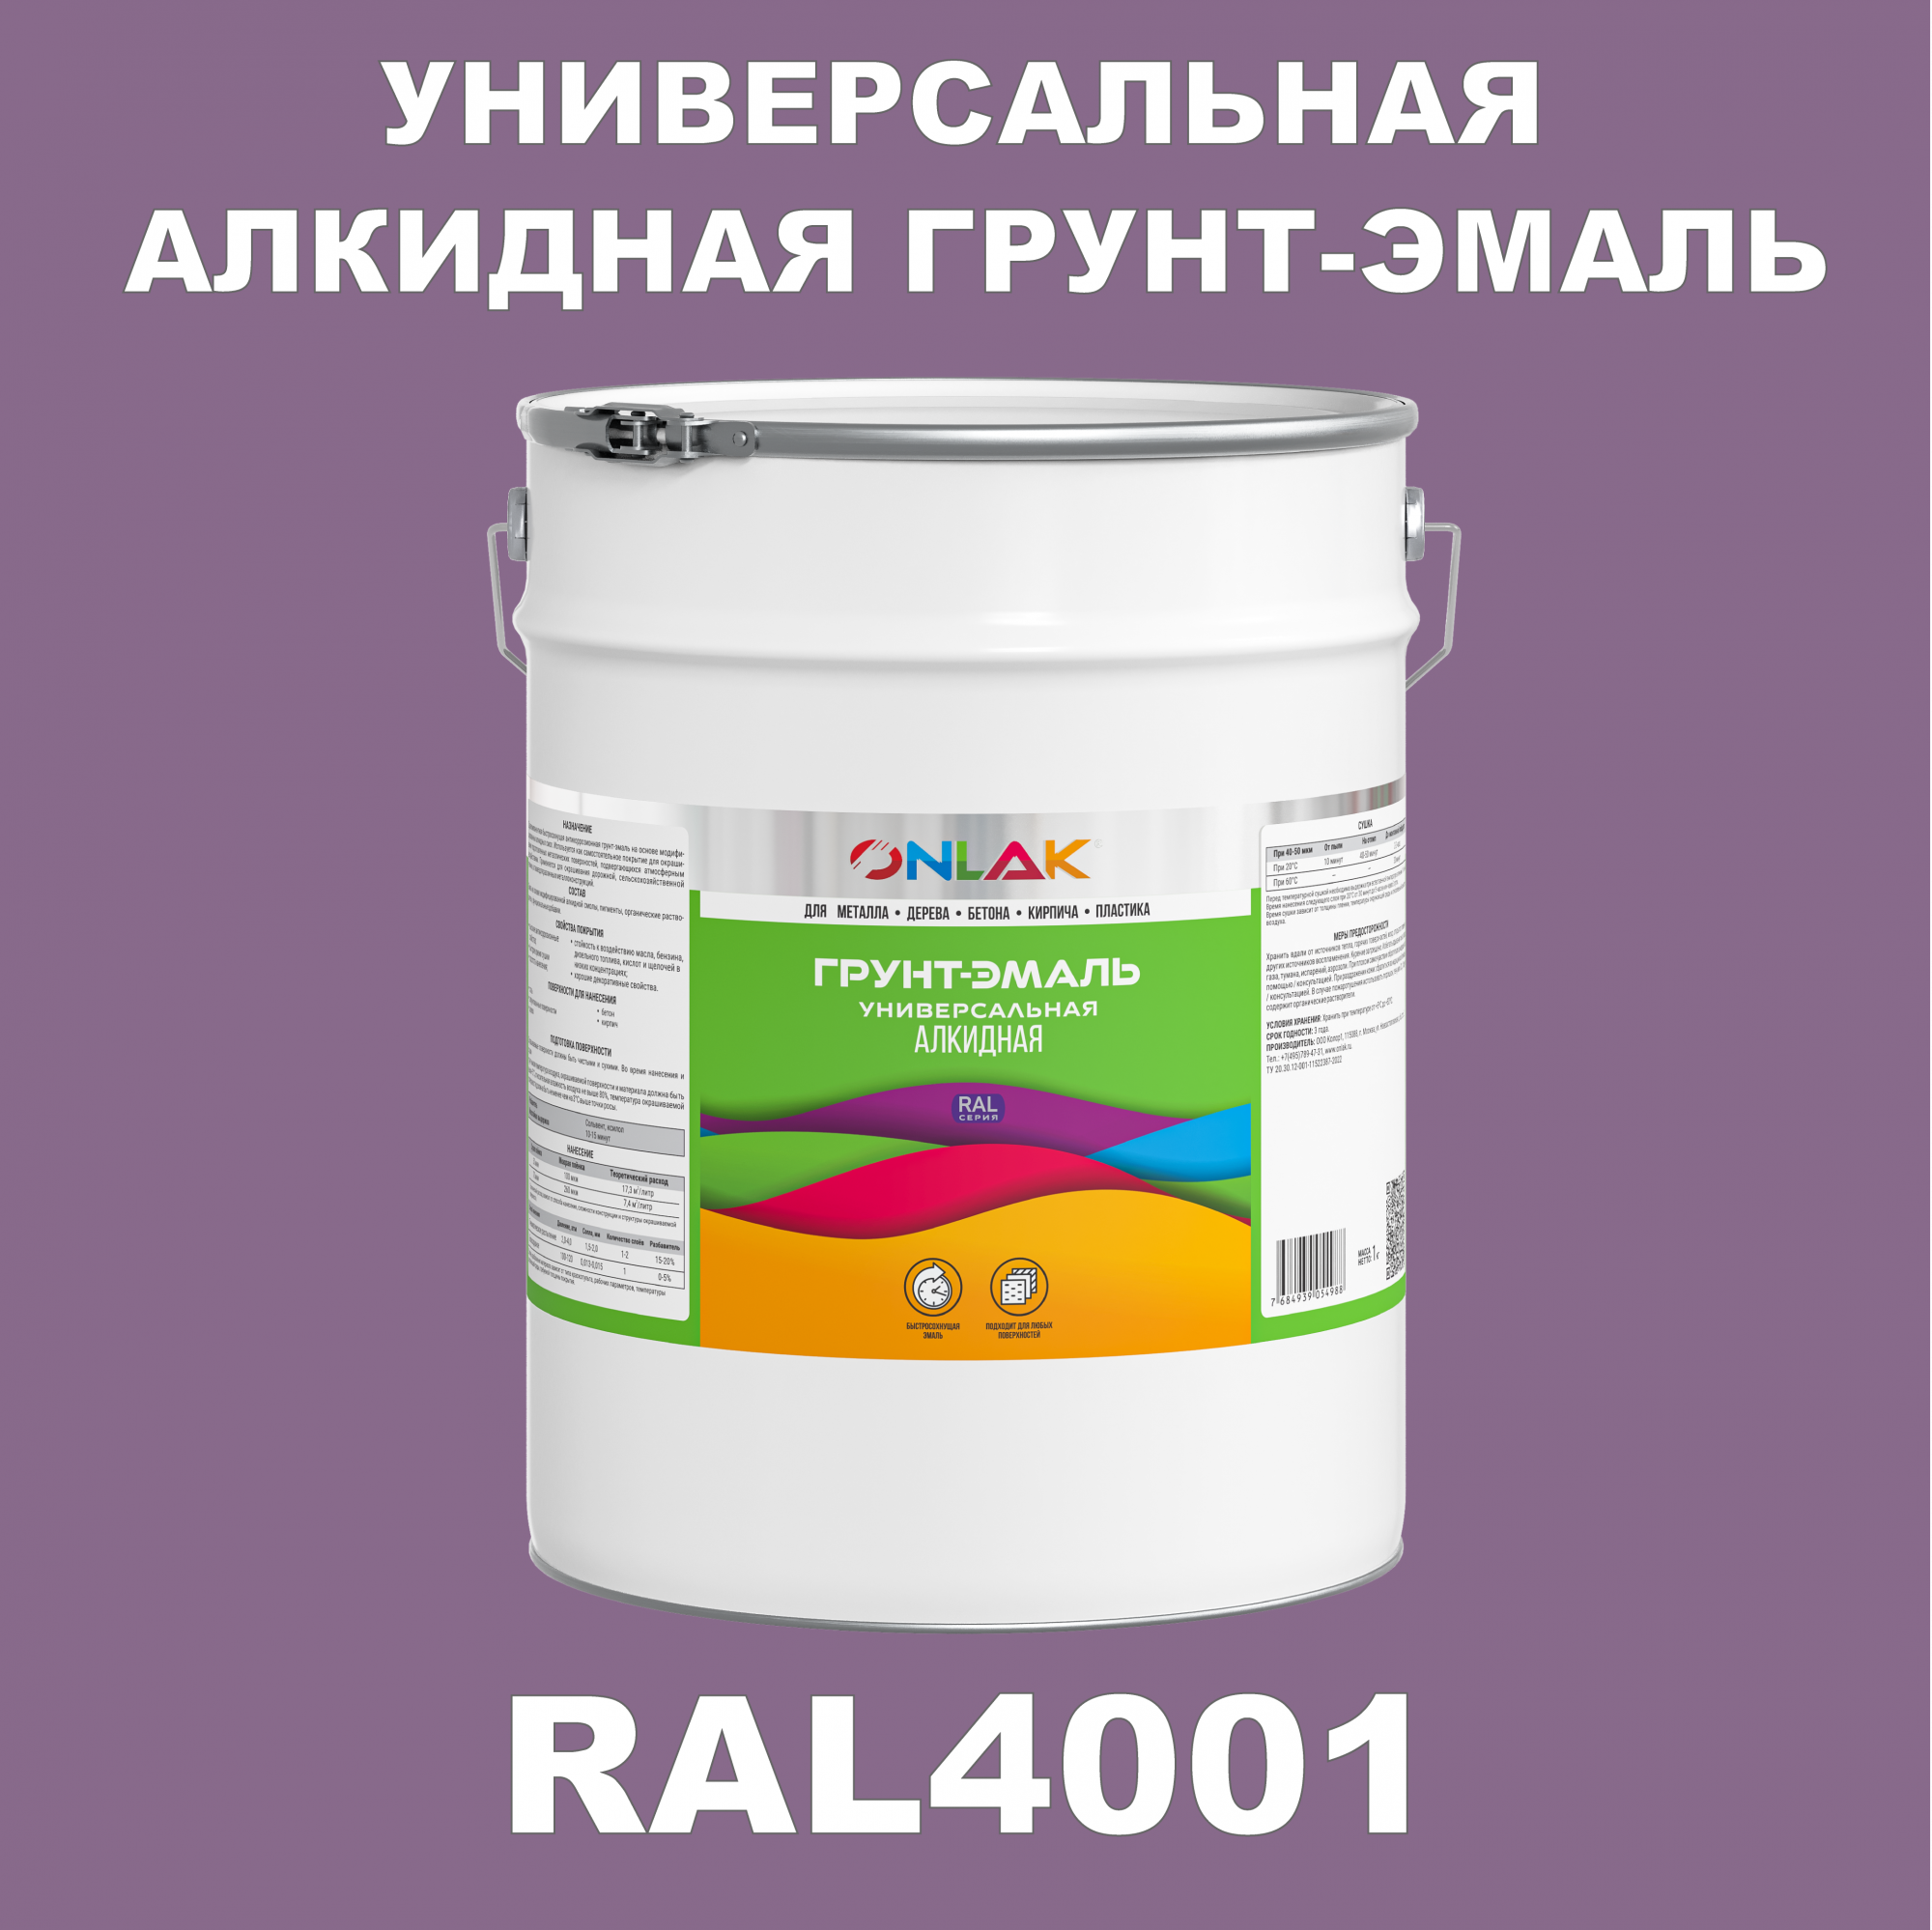 Грунт-эмаль ONLAK 1К RAL4001 антикоррозионная алкидная по металлу по ржавчине 20 кг антикоррозионная грунт эмаль onlak ral 4012 фиолетовый 715 мл